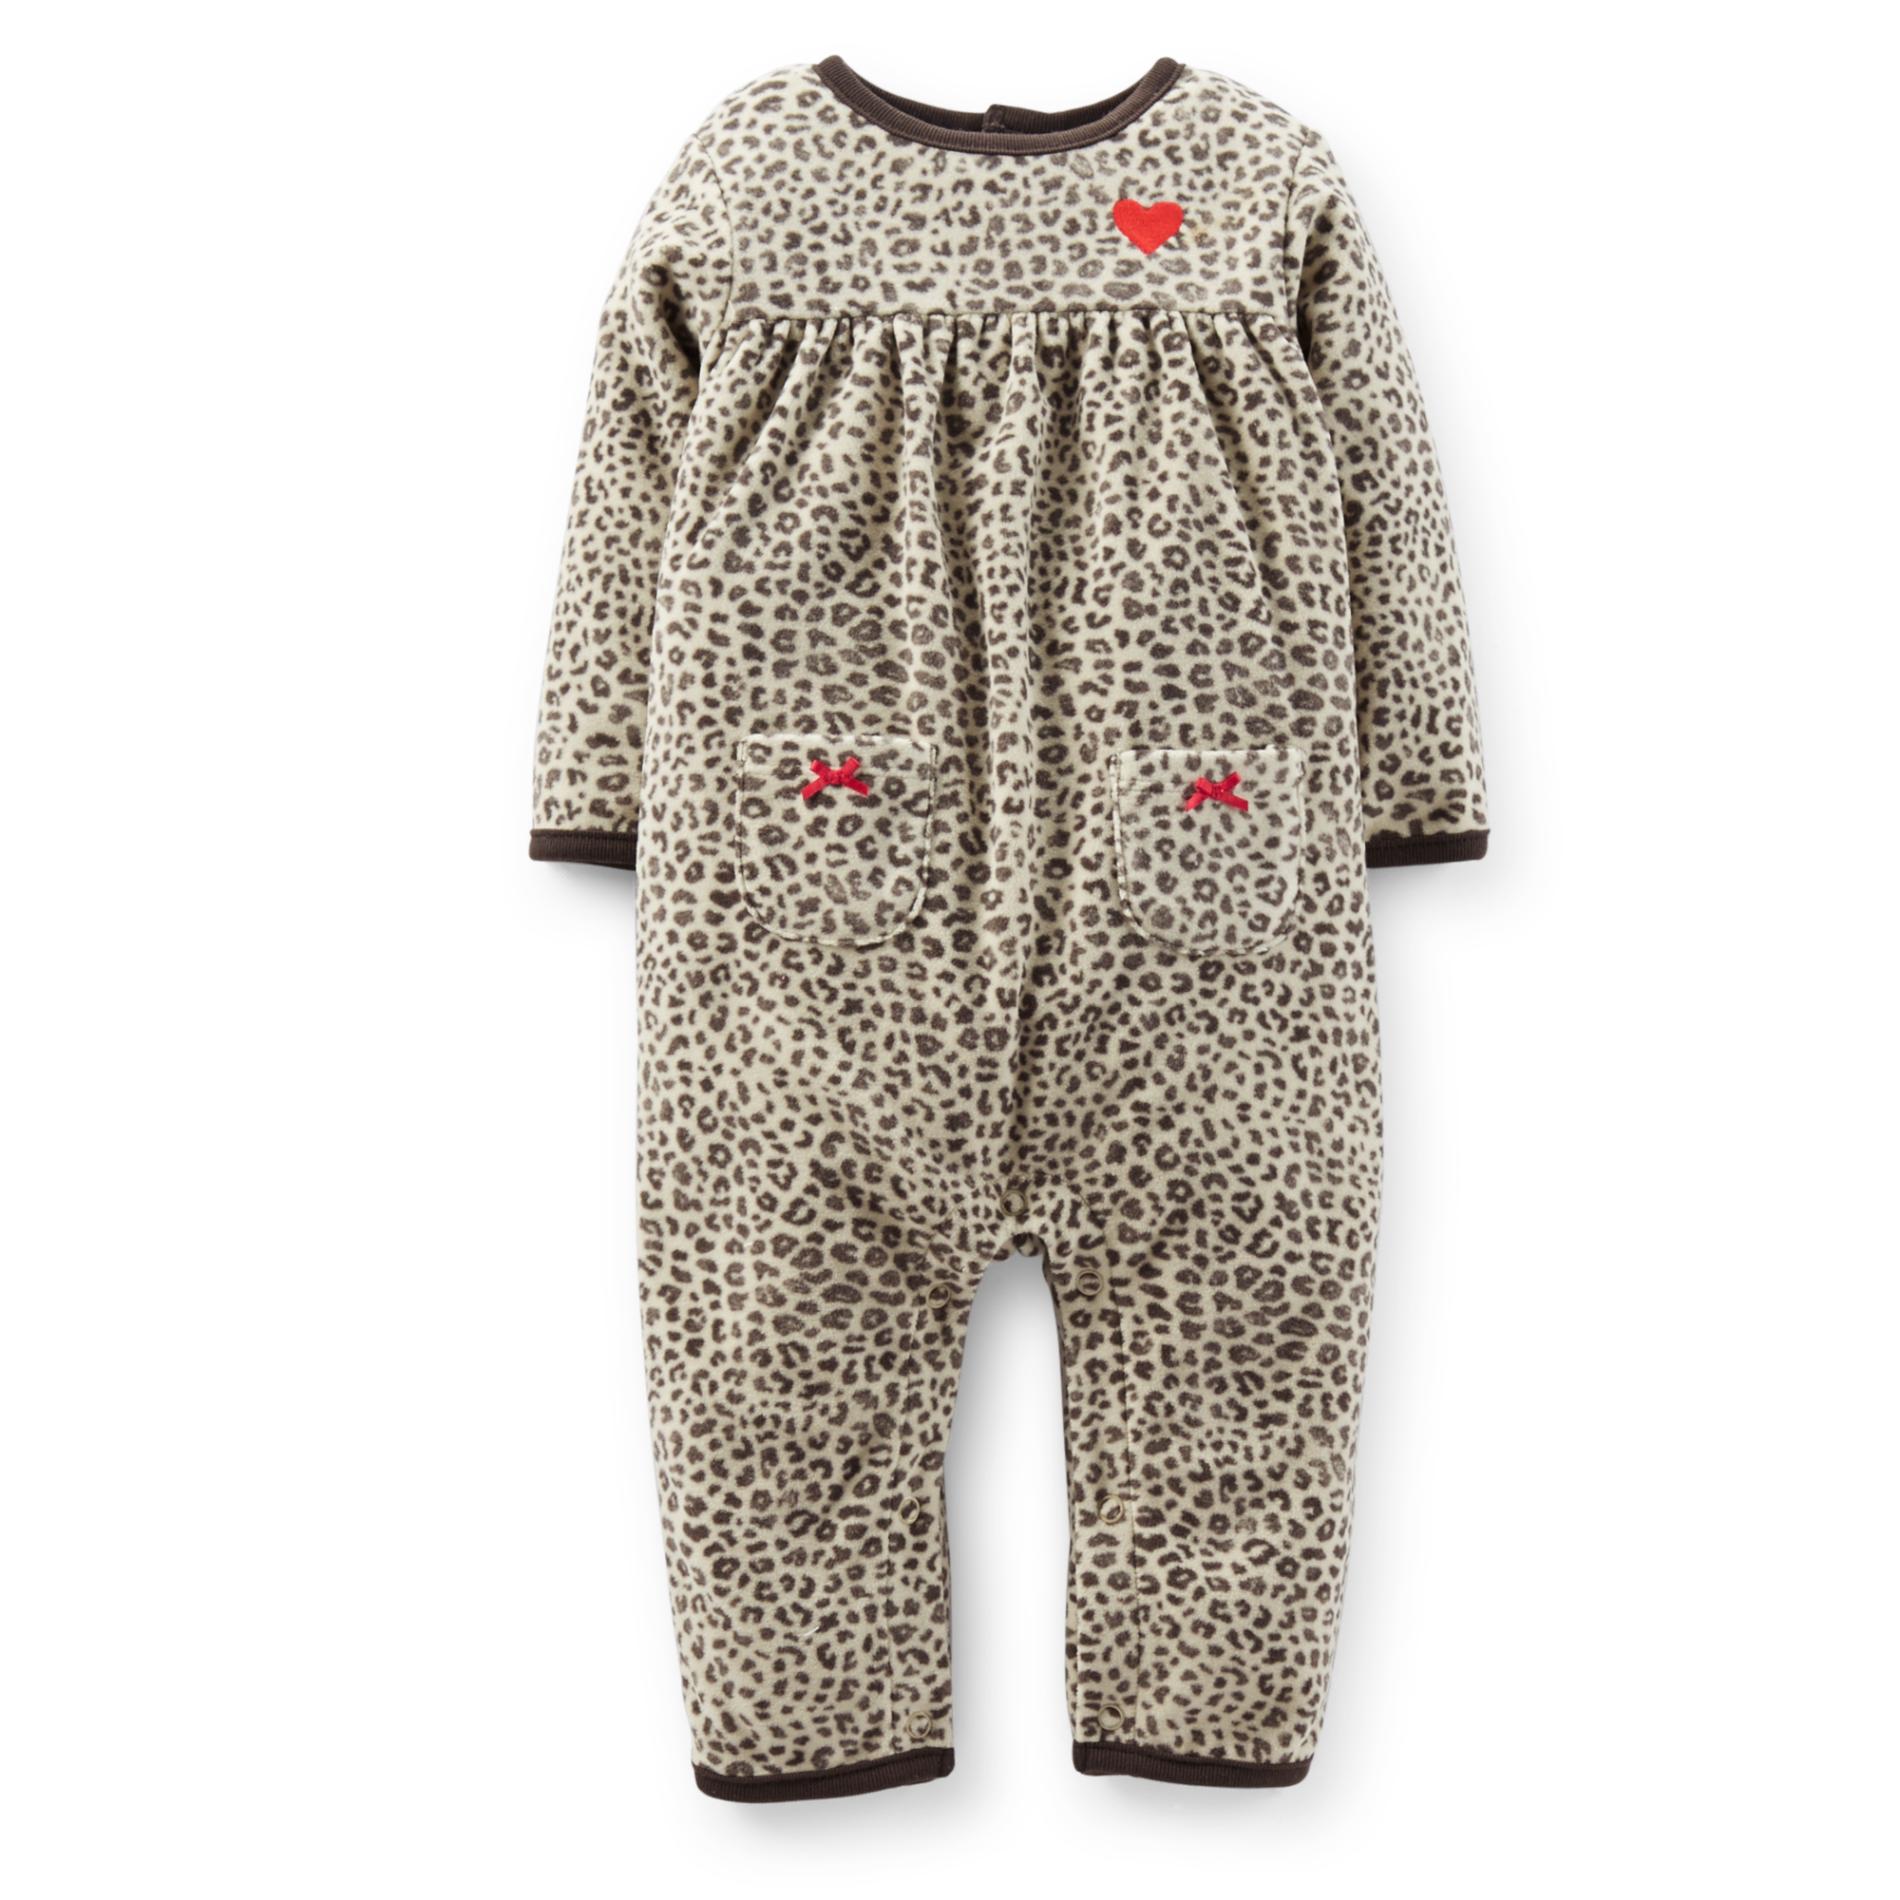 Carter's Newborn & Infant Girl's Microfleece Bodysuit - Leopard Print